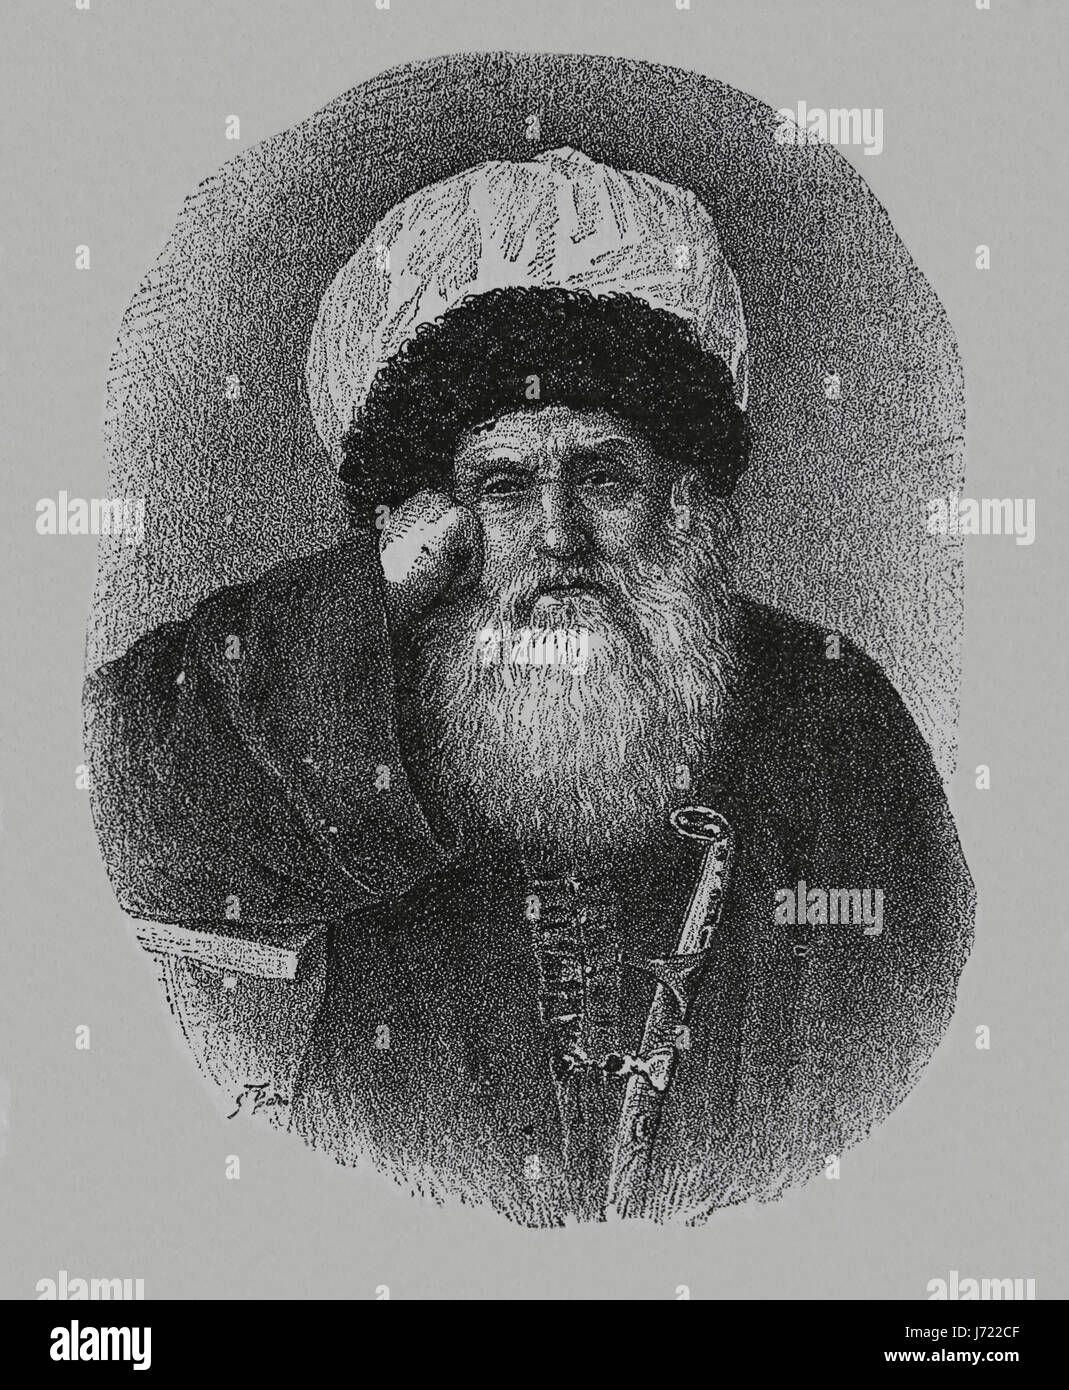 Iman Shamil (1797-1871). Leader anti-russo reistance in guerra caucasica. 3° Imam di Imamate caucasica. Incisione. Il nostro secolo, 1883. Edizione spagnola. Foto Stock